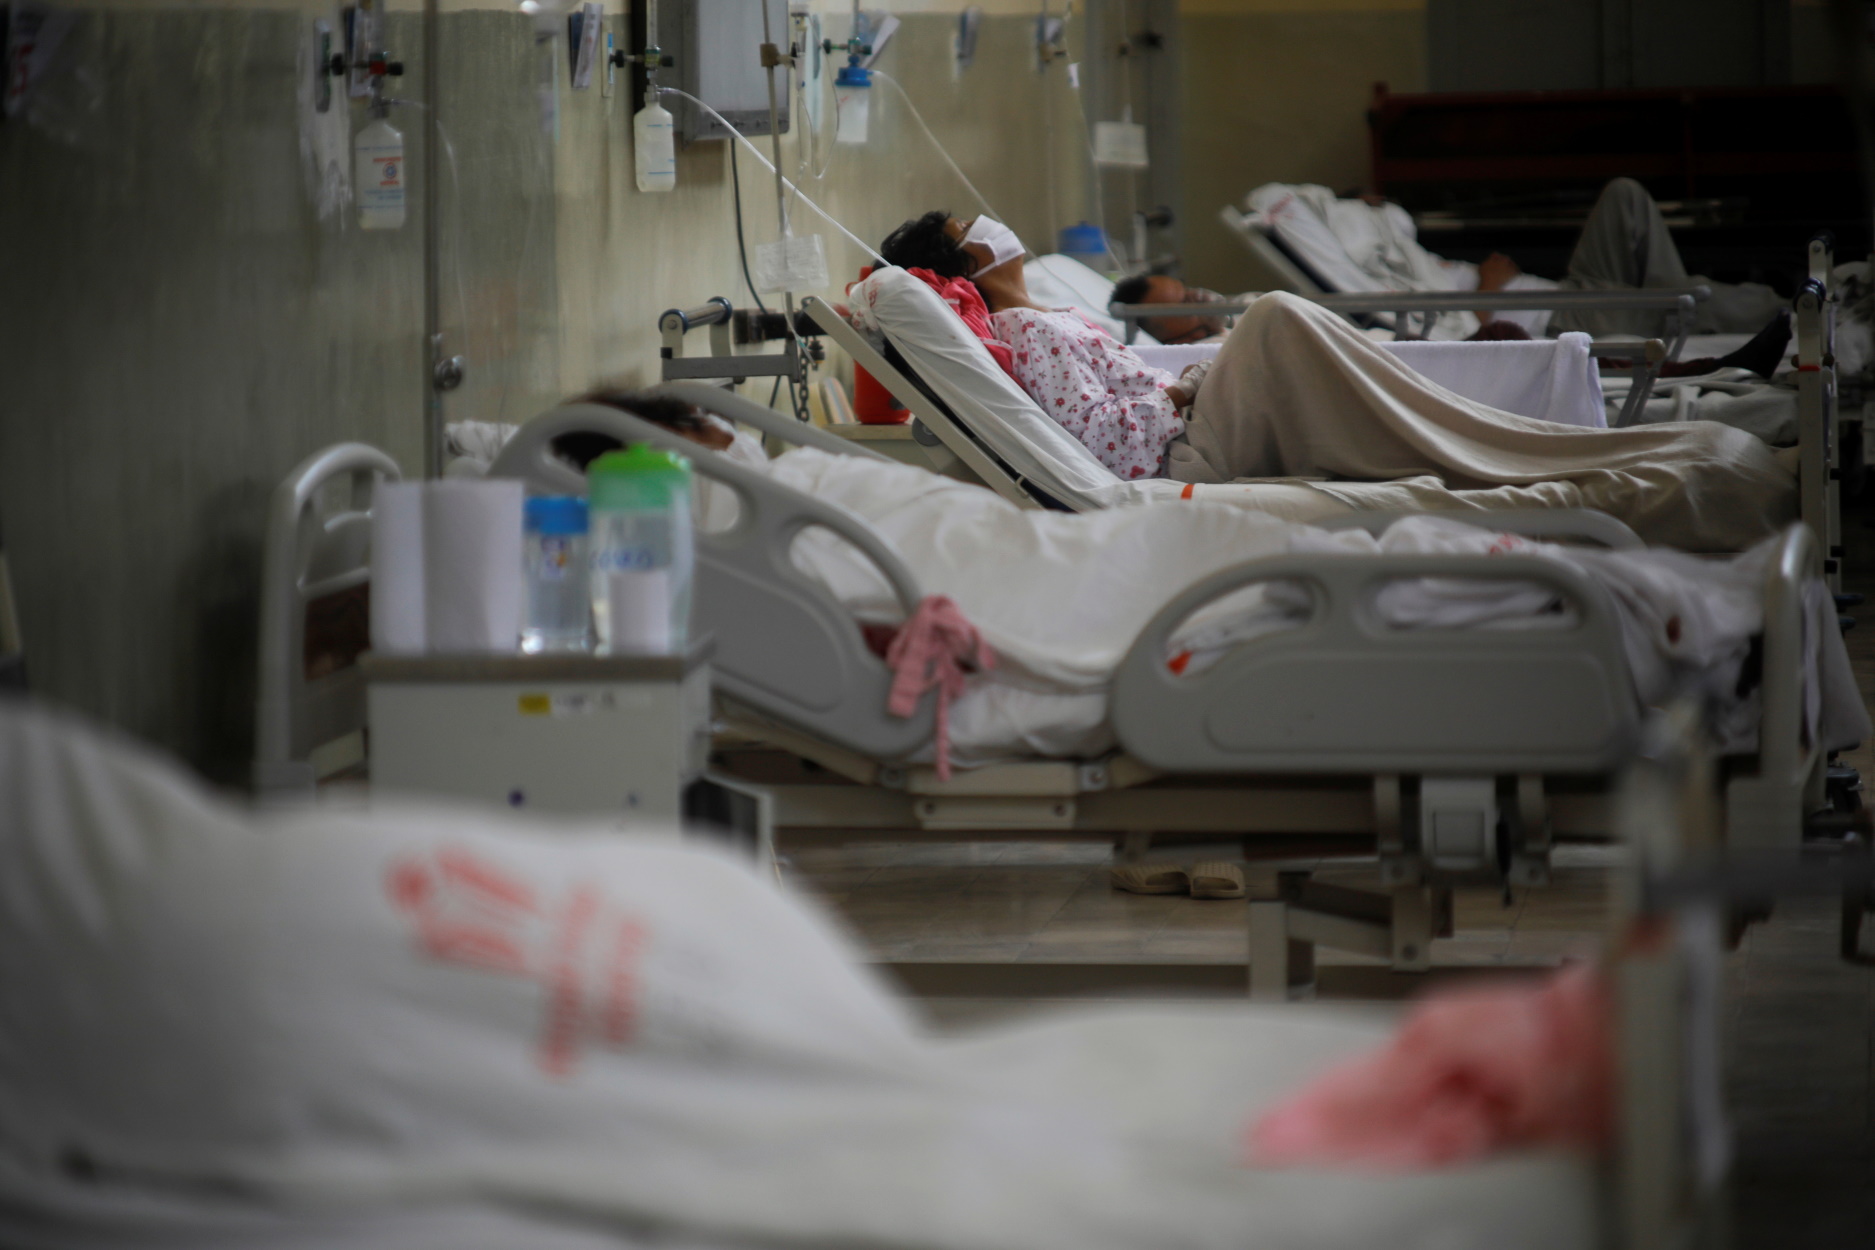 Περού – κορονοϊός: Τραγικές εικόνες με χρησιμοποιημένες μάσκες και πτώματα στους διαδρόμους των νοσοκομείων (video)